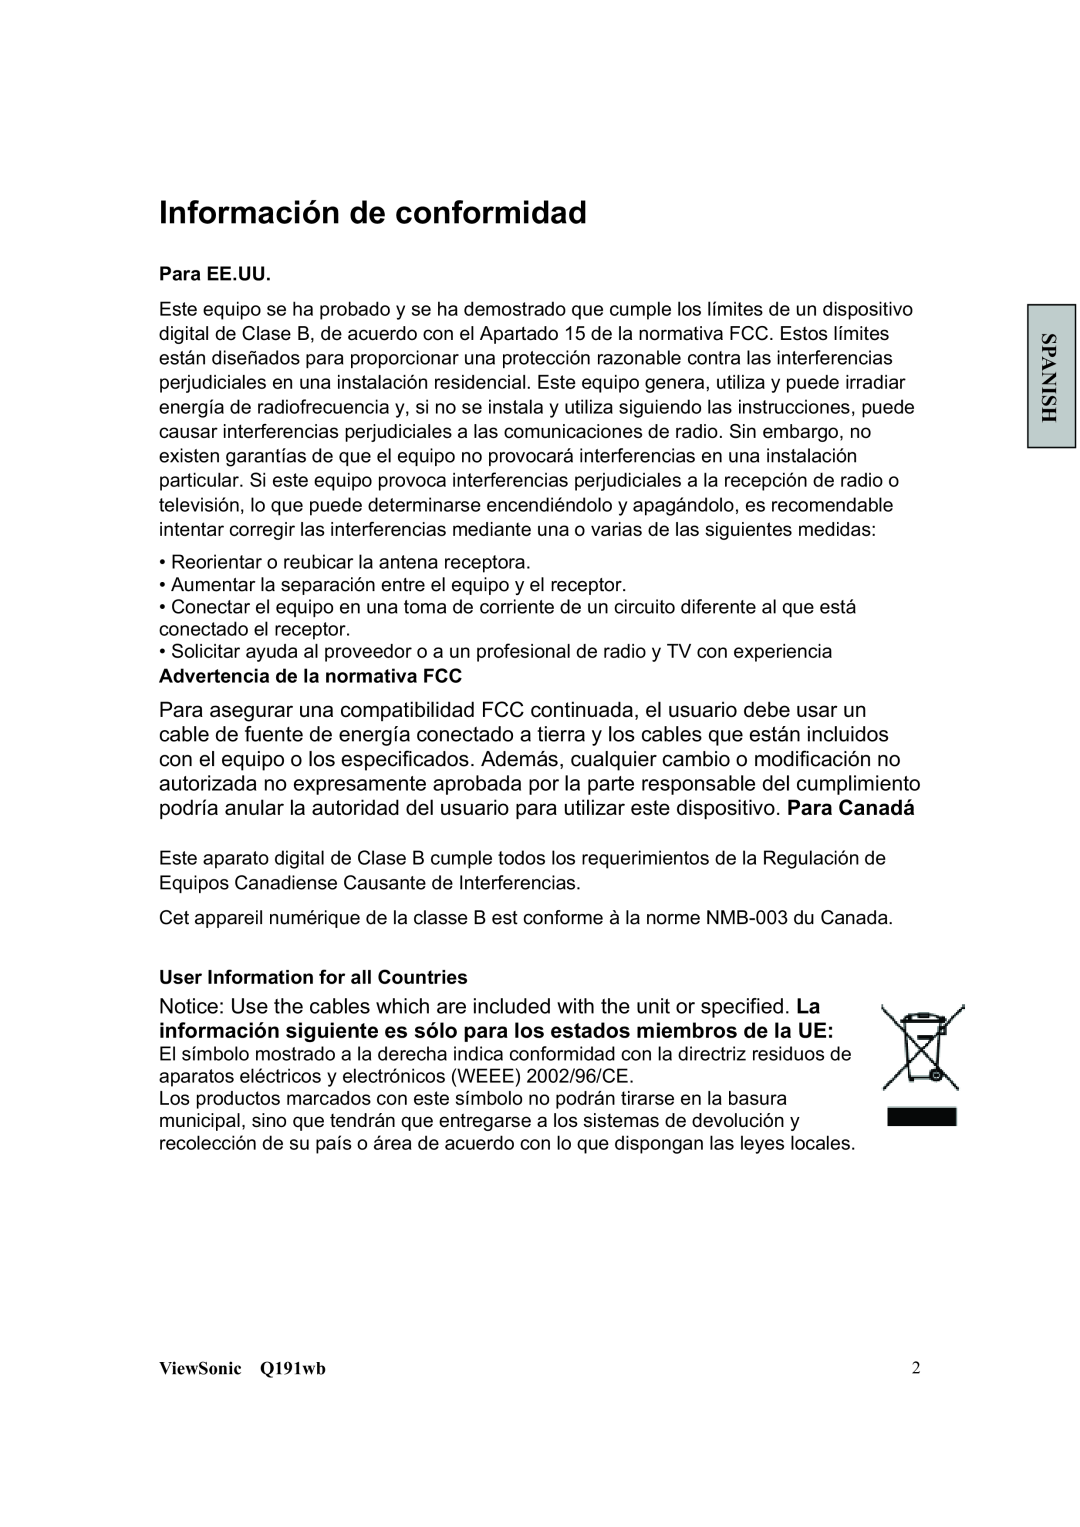 ViewSonic Q191WB manual Información de conformidad, Spanish, Para EE.UU, Advertencia de la normativa FCC, ViewSonic Q191wb 